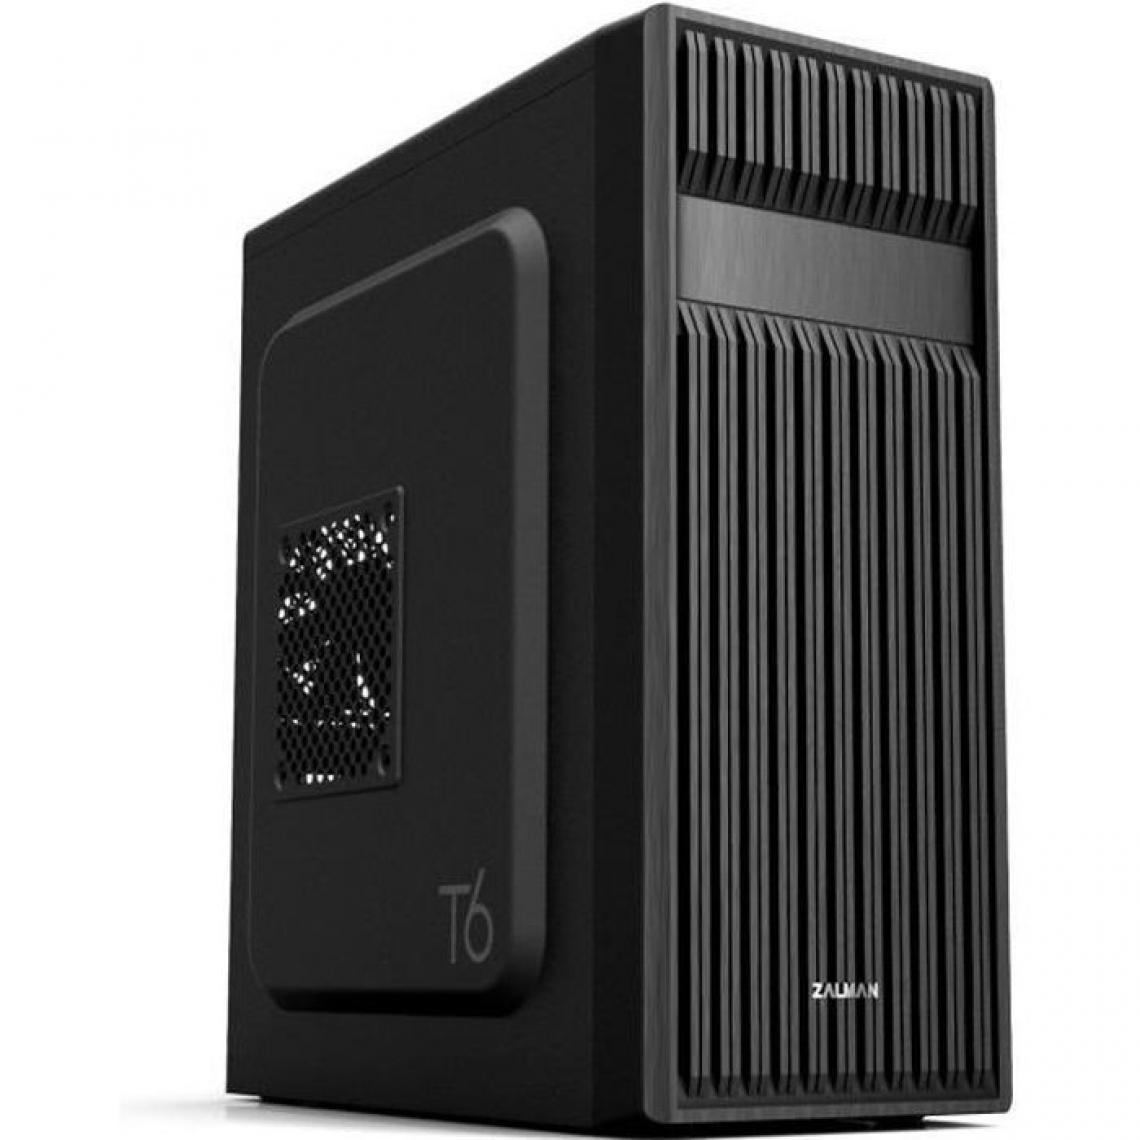 Zalman - ZALMAN BOITIER PC T6 - Moyen Tour - Noir - Format ATX (T6BK) - Boitier PC